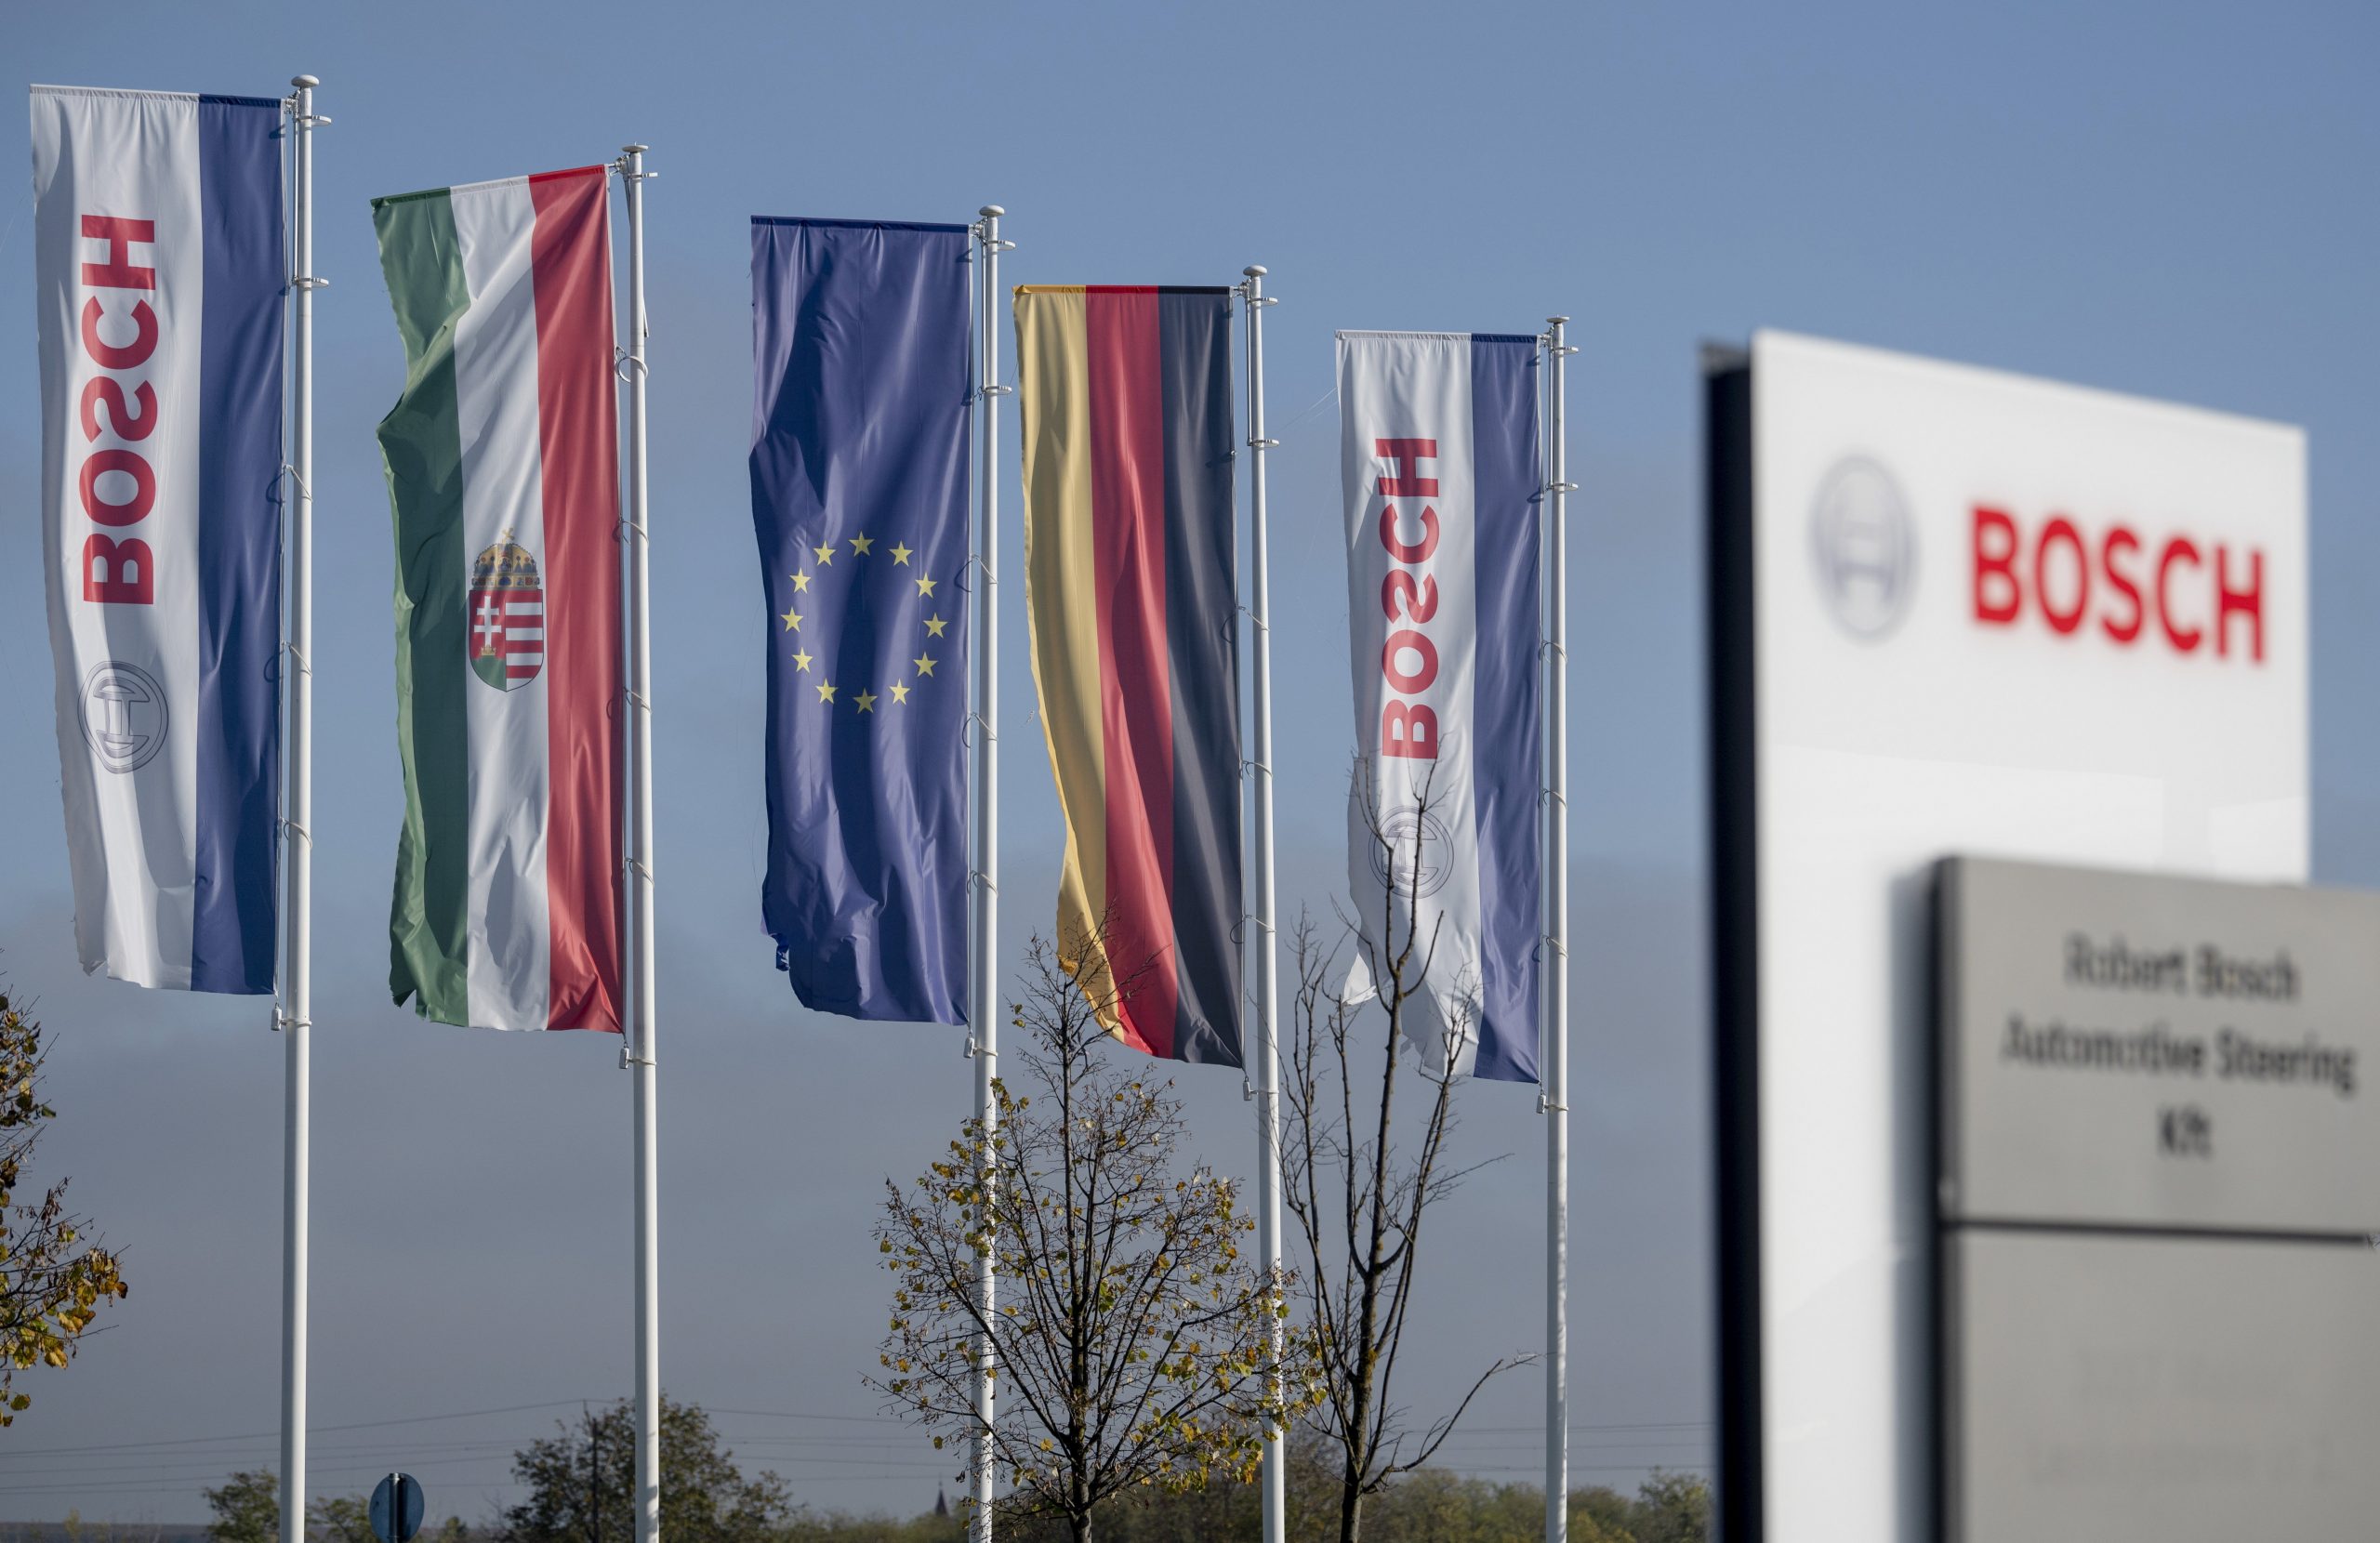 Bosch schließt seine Großinvestition mit dem Bau eines neuen Logistikzentrums ab